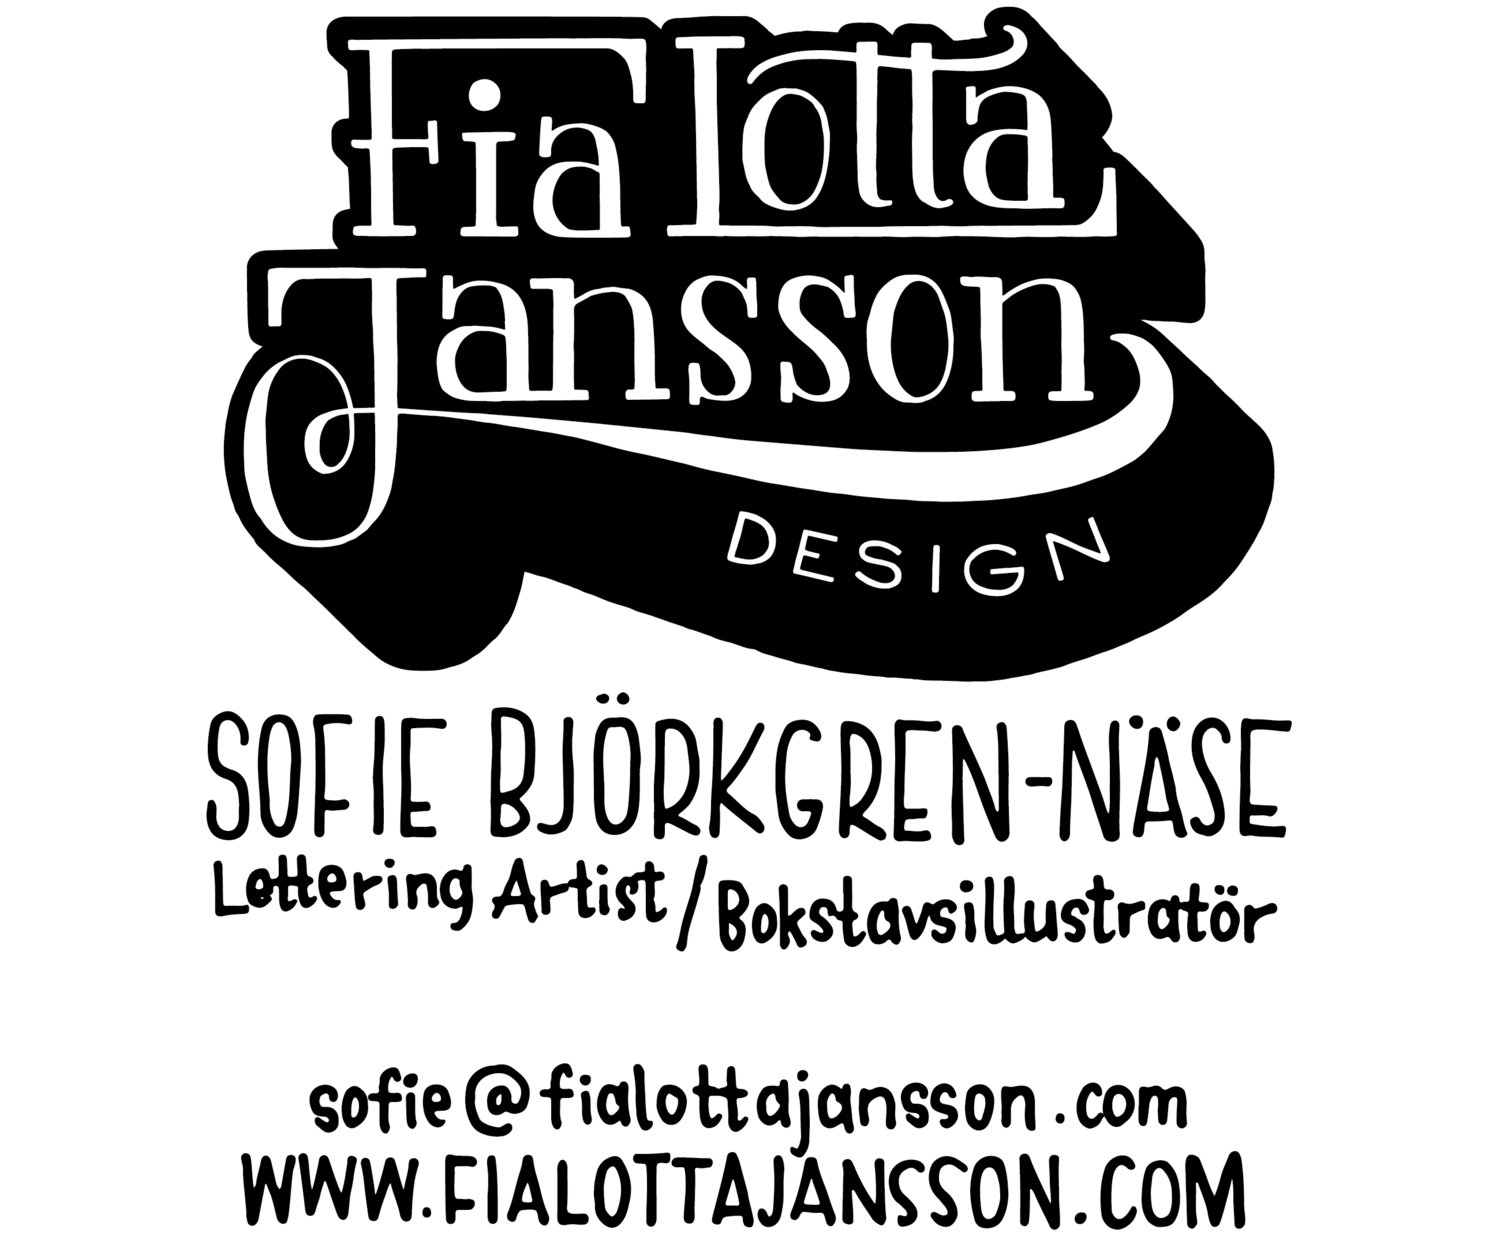 Fia Lotta Jansson Design